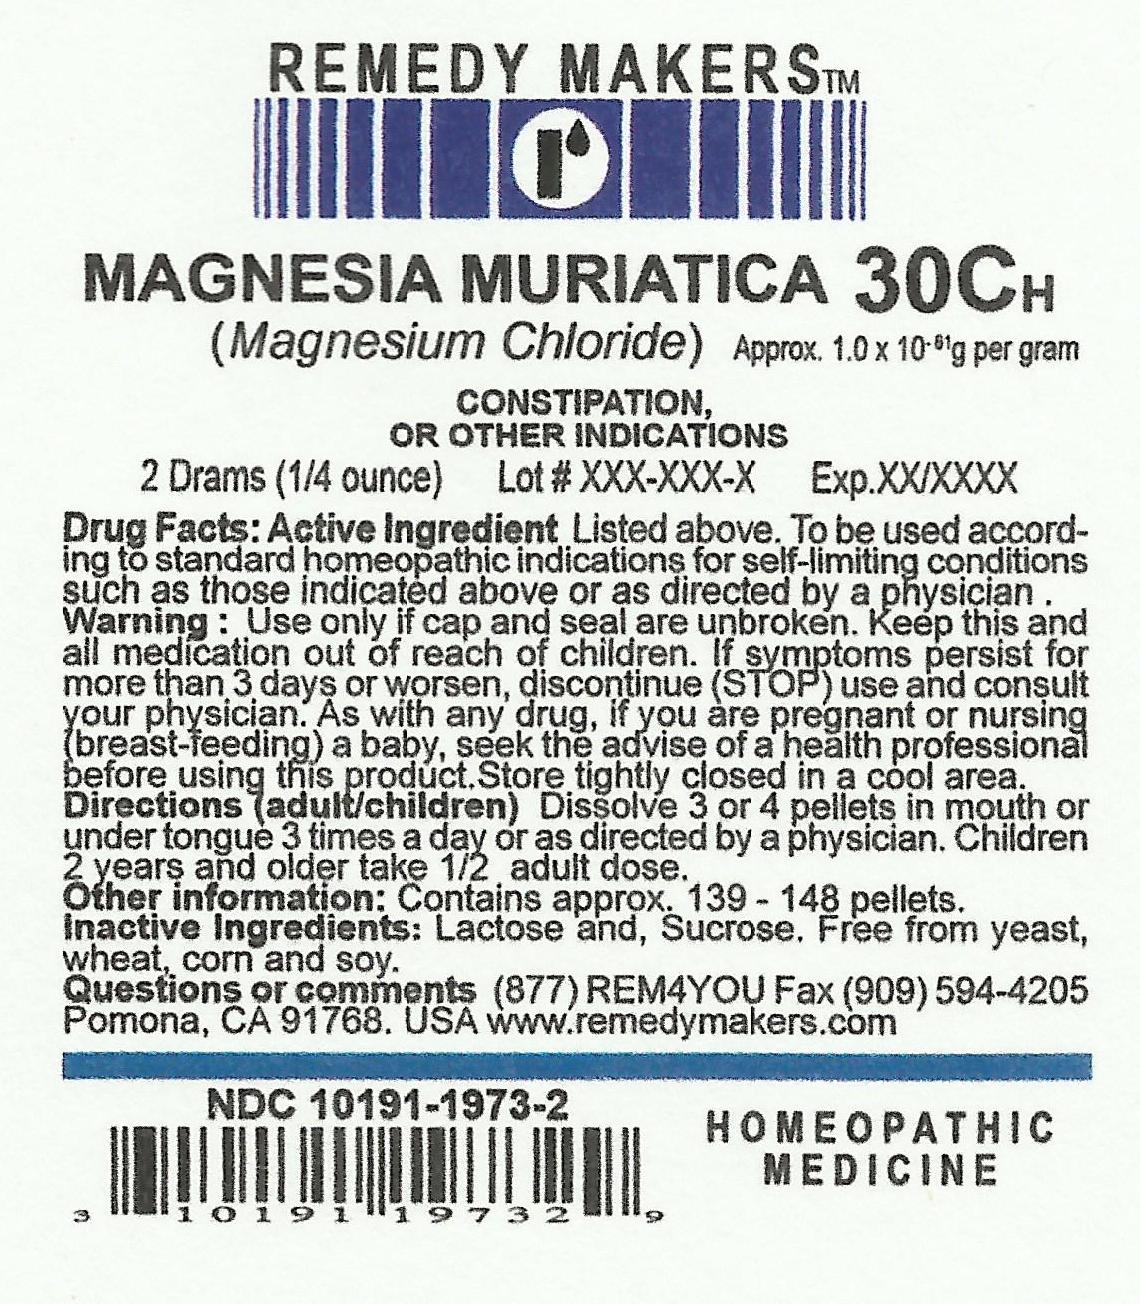 MAGNESIAMURIATICA30C